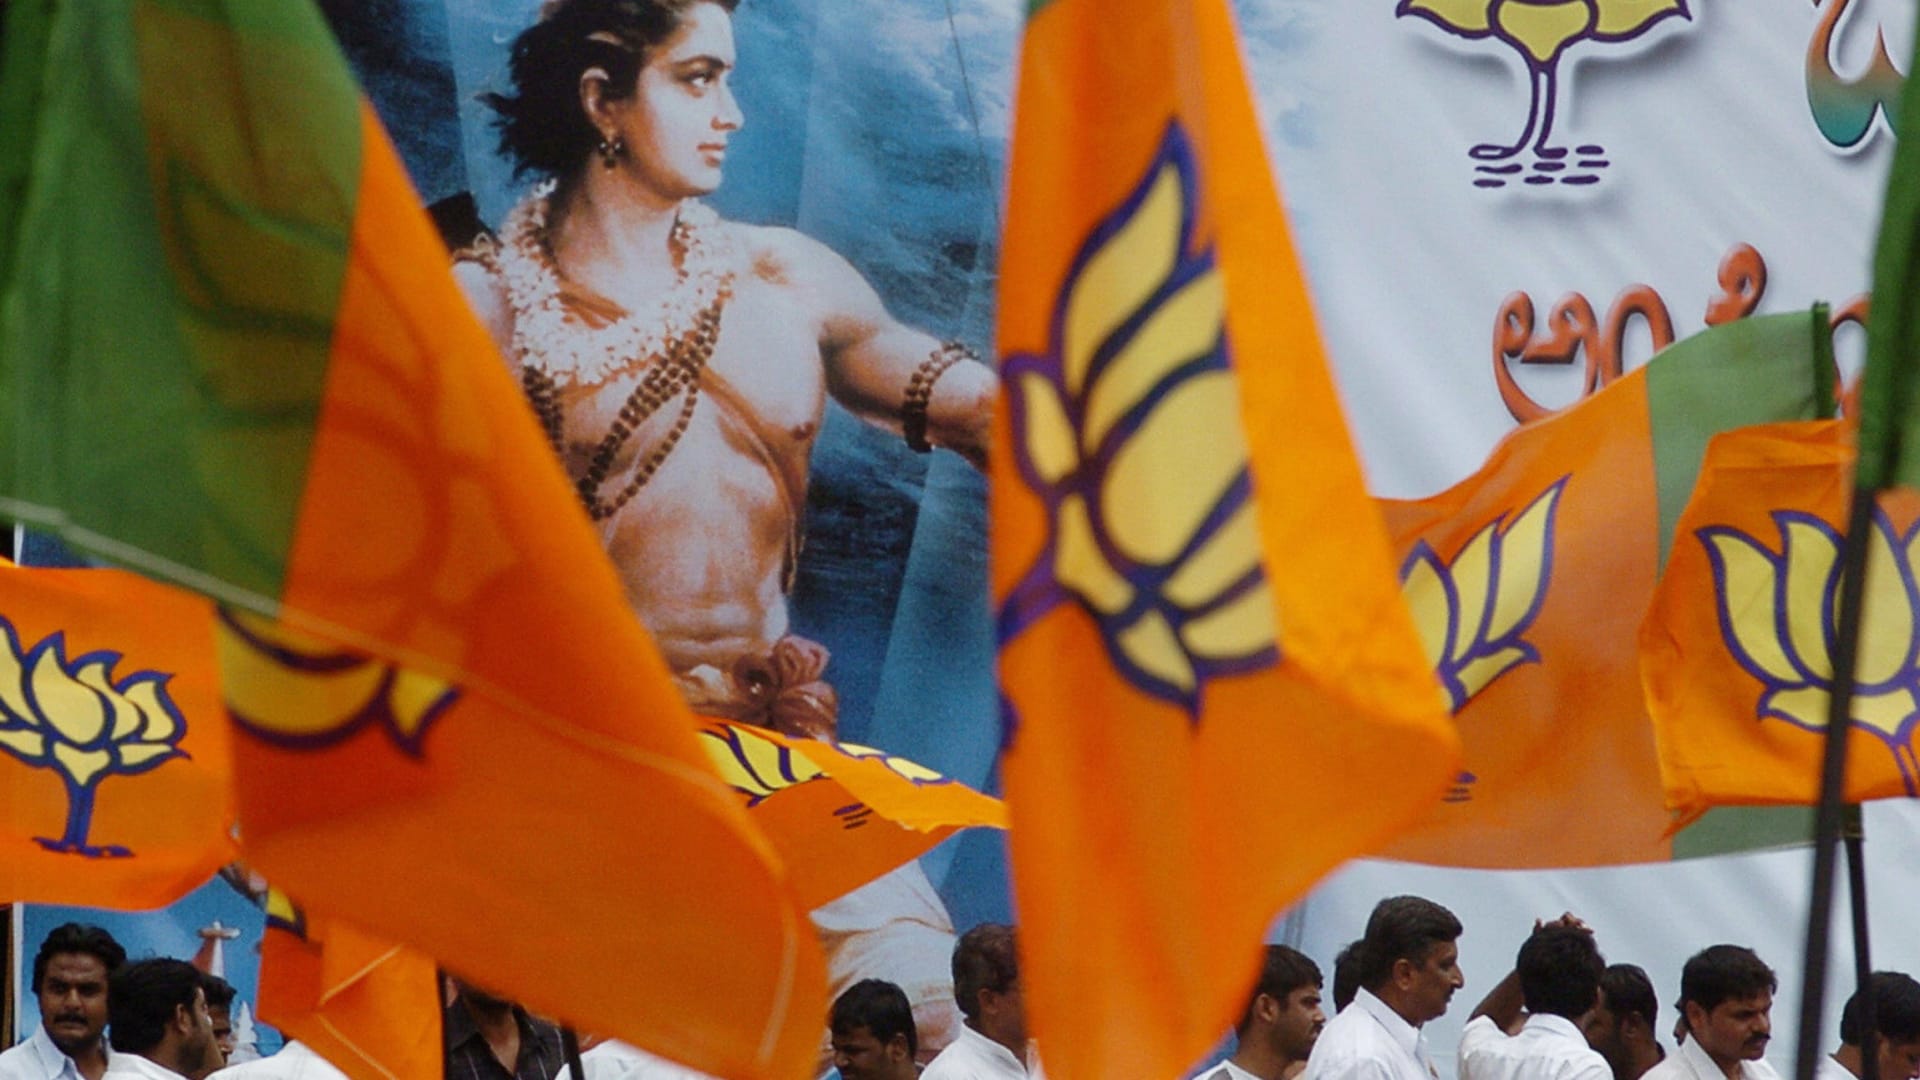 صورة ارشيفية لمؤيدين لحزب بهارتا يرفعون أعلام الحزب مع صورة في الخلفية لأحد الآلة الهندوسية